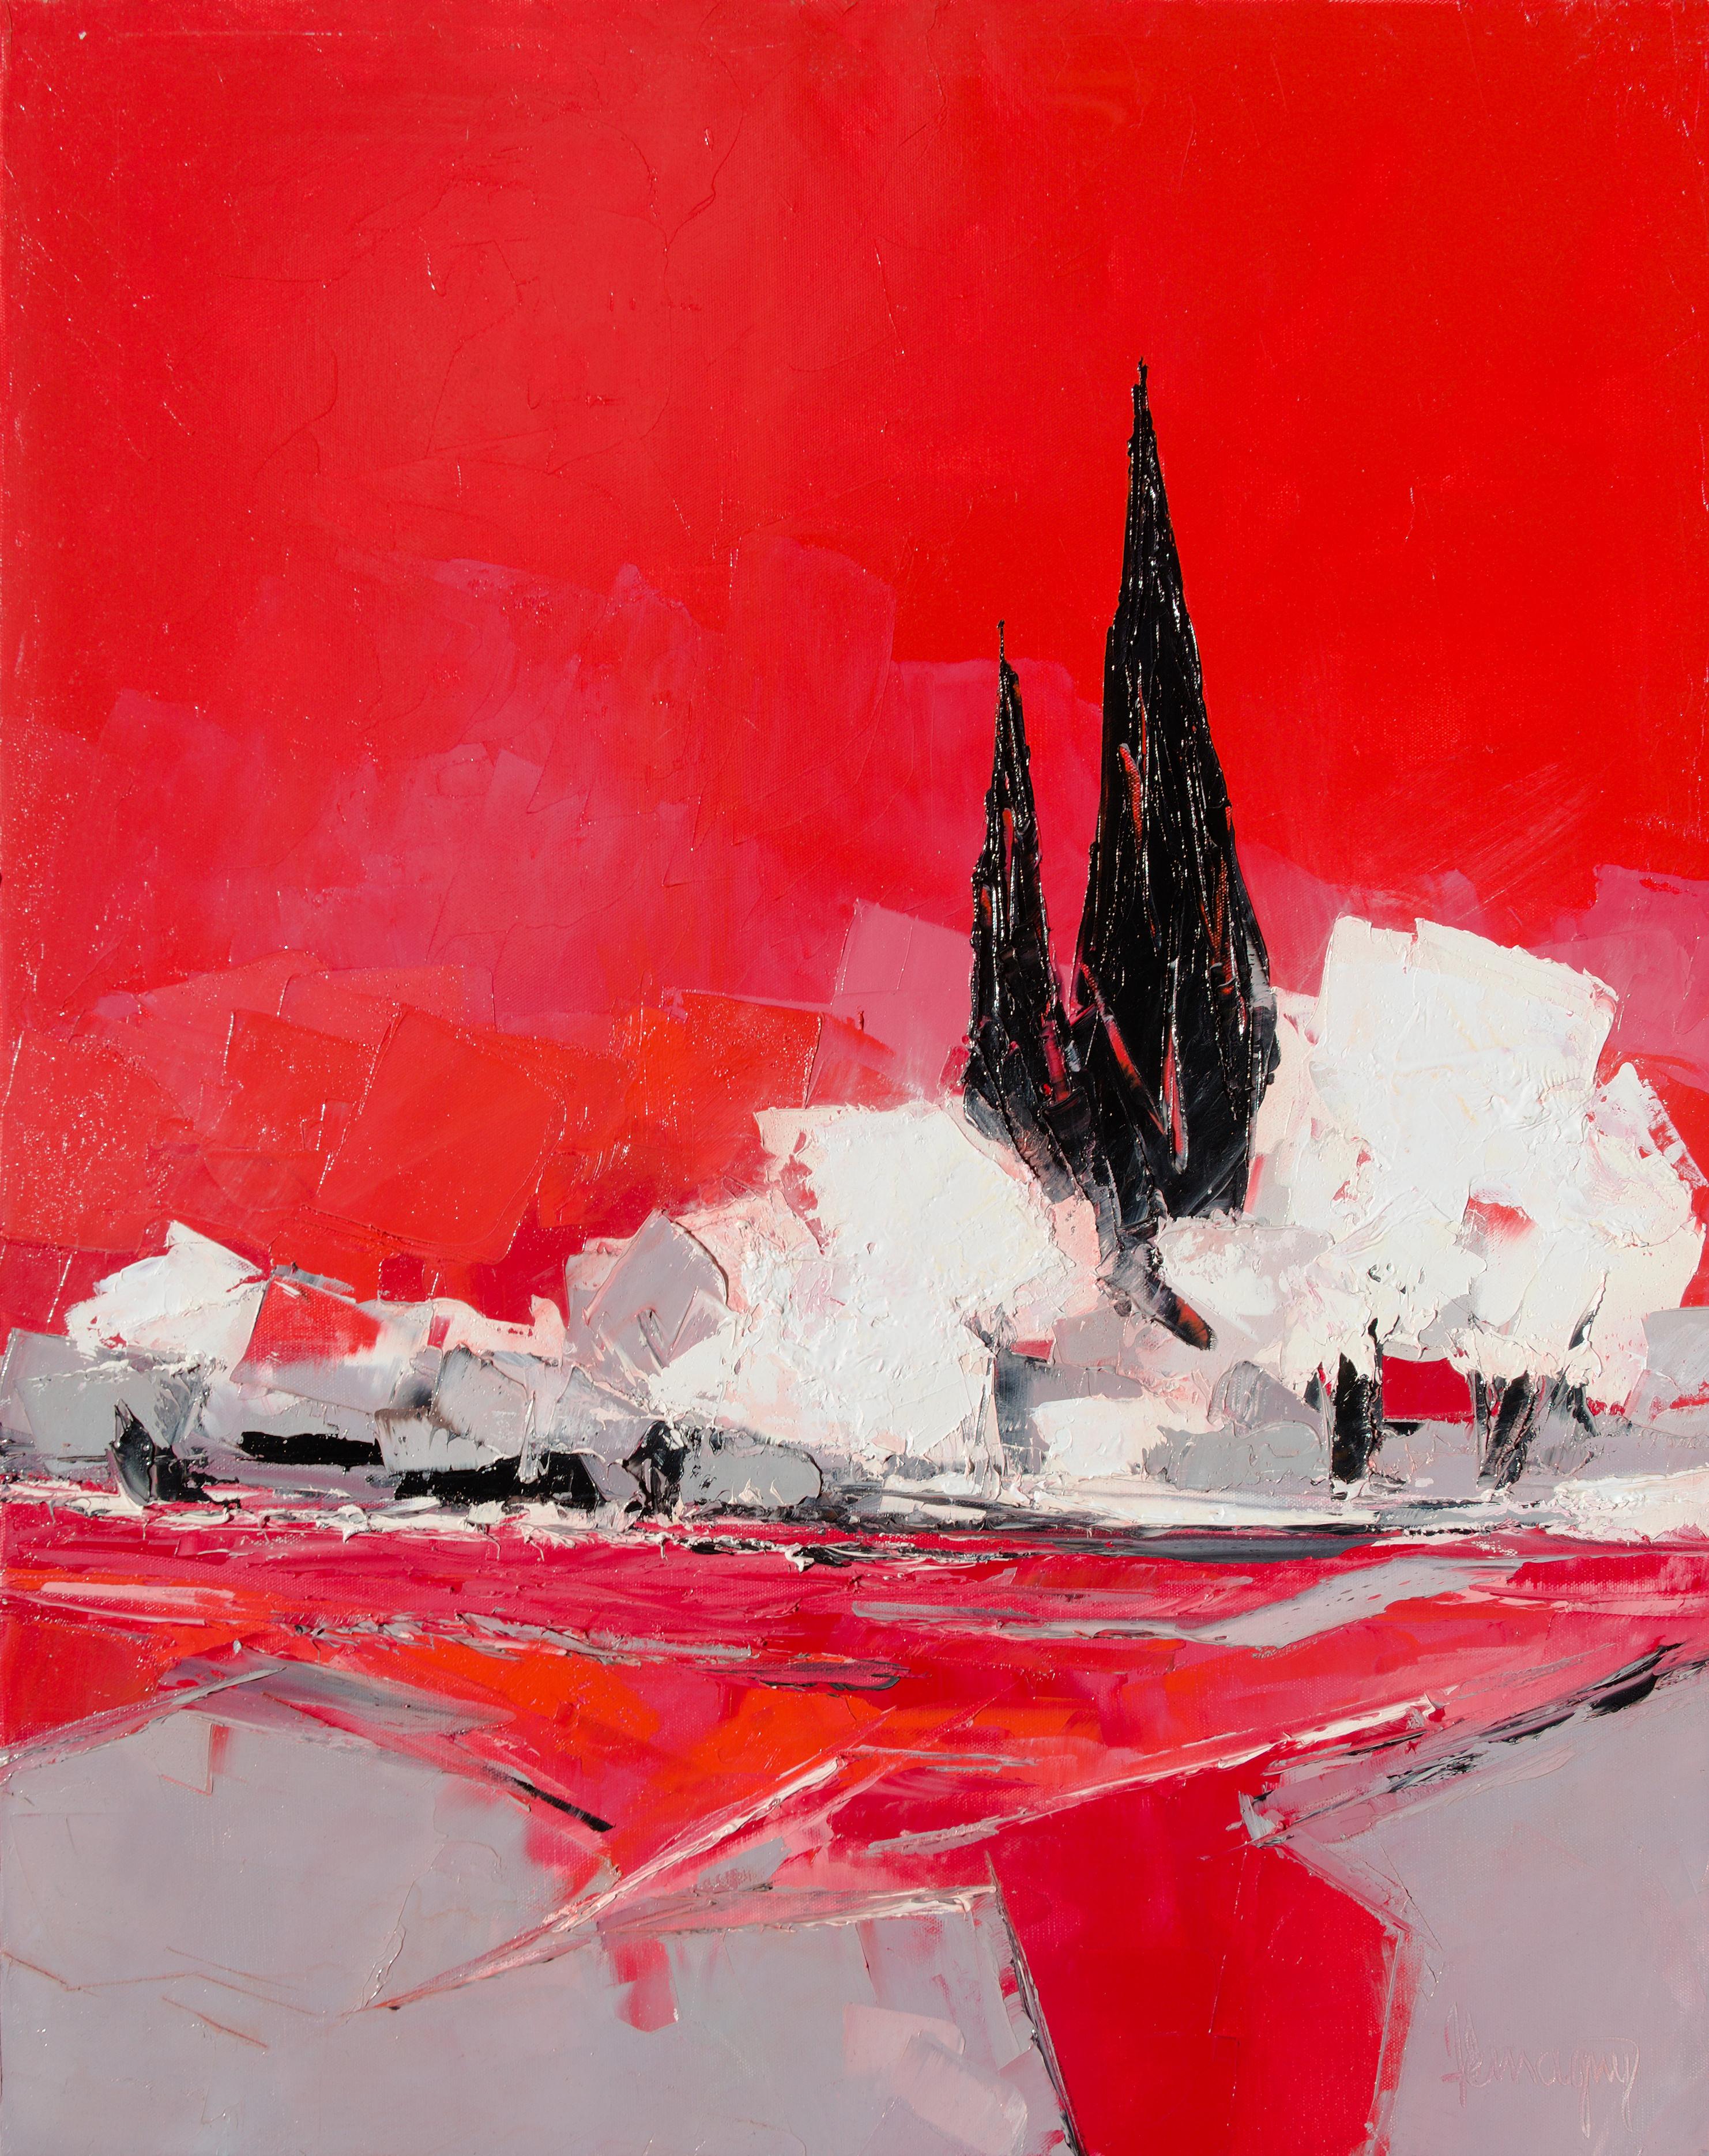 Landscape Painting Marcel Demagny - Peinture à l'huile « Printemps » (« Printtemps »), arbres blancs et paysage de cyprès rouges